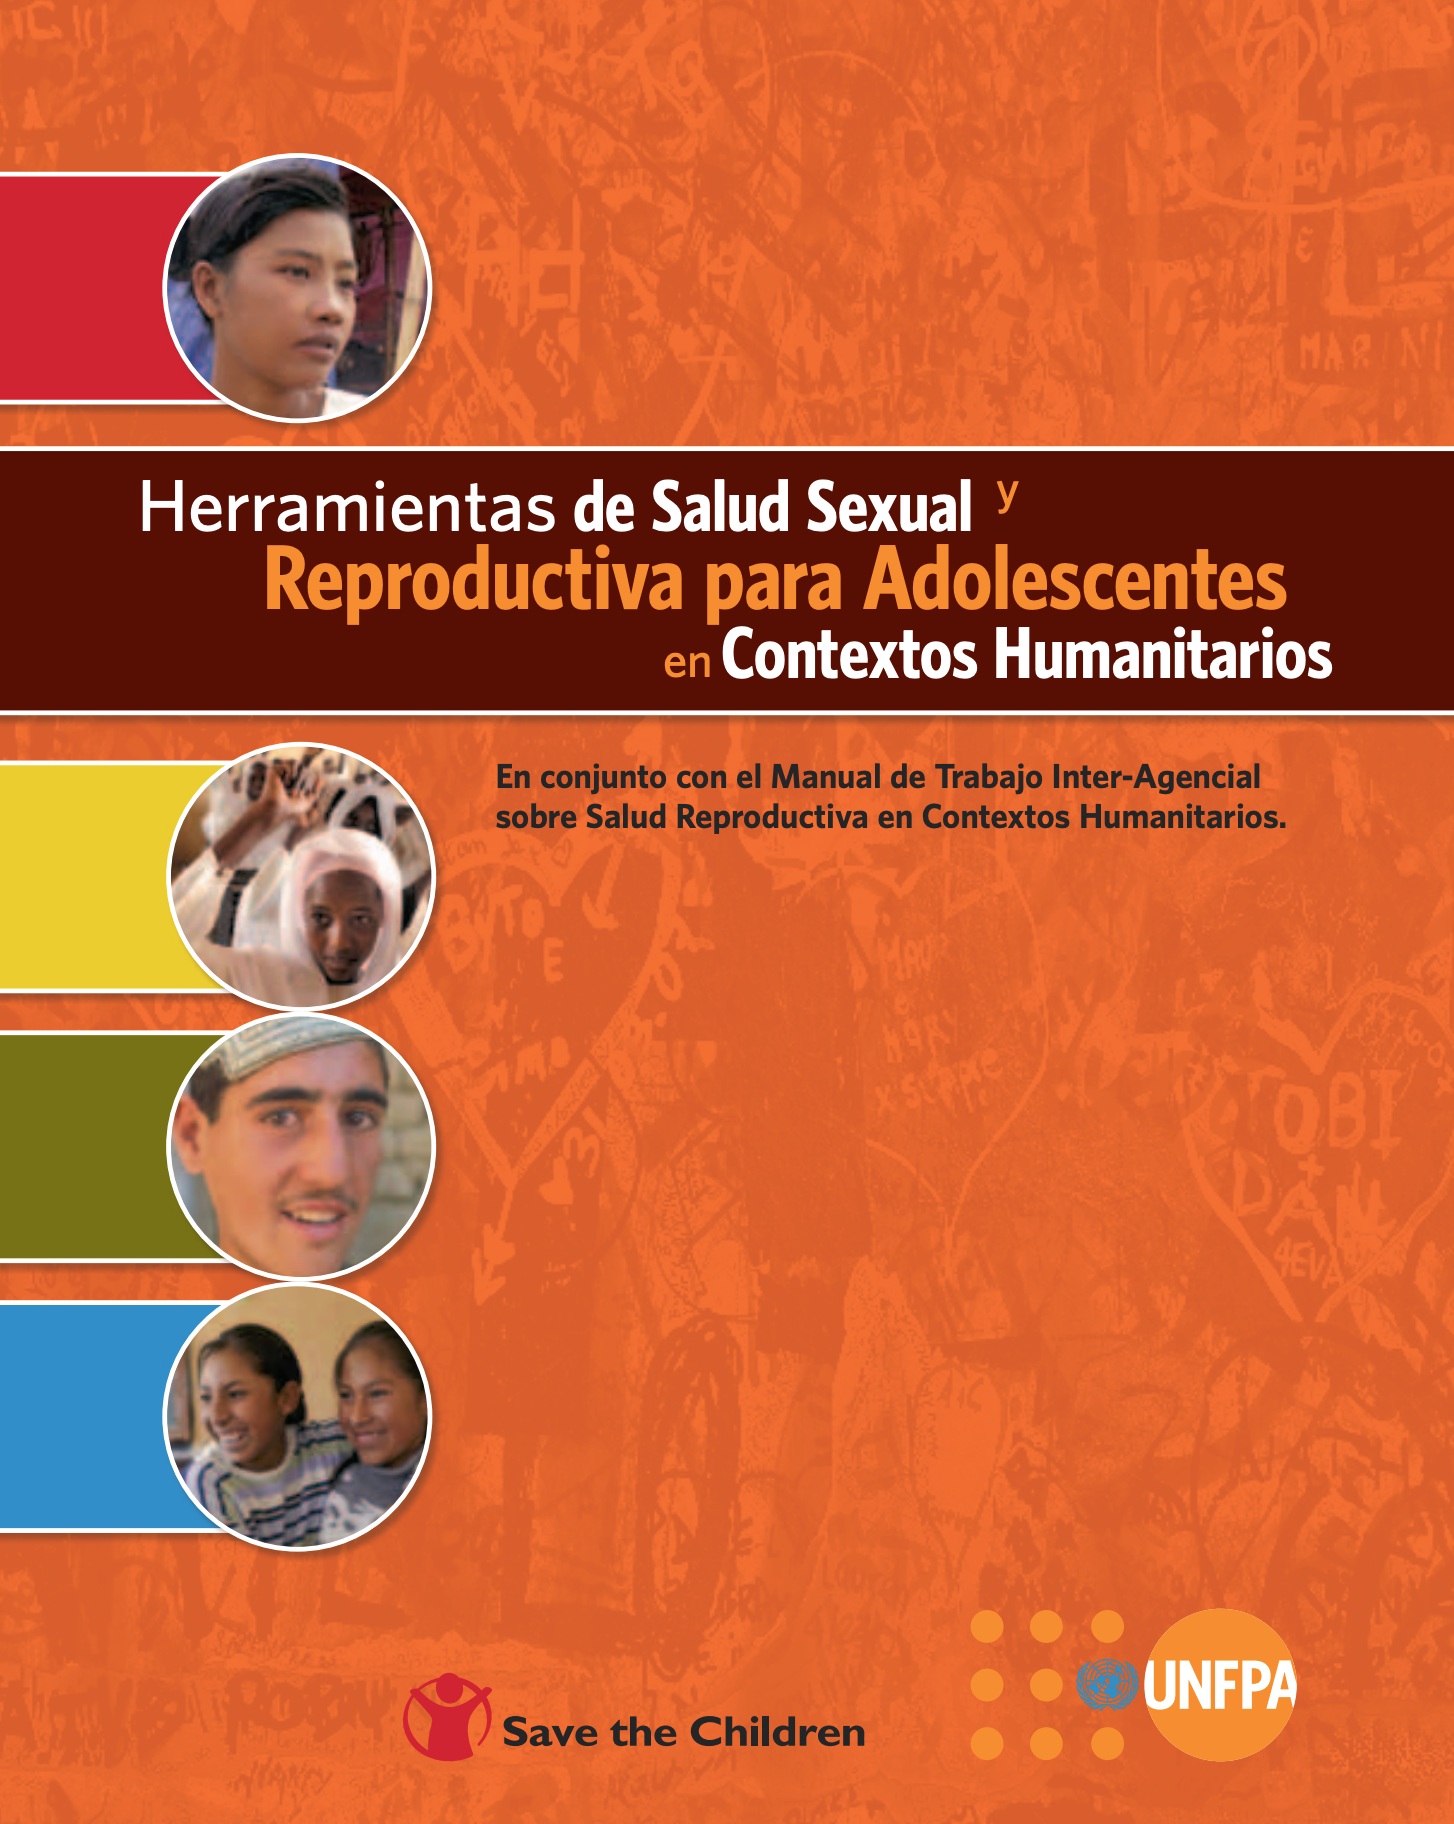 Herramientas de Salud Sexual y Reproductiva para Adolescentes en Contextos Humanitarios